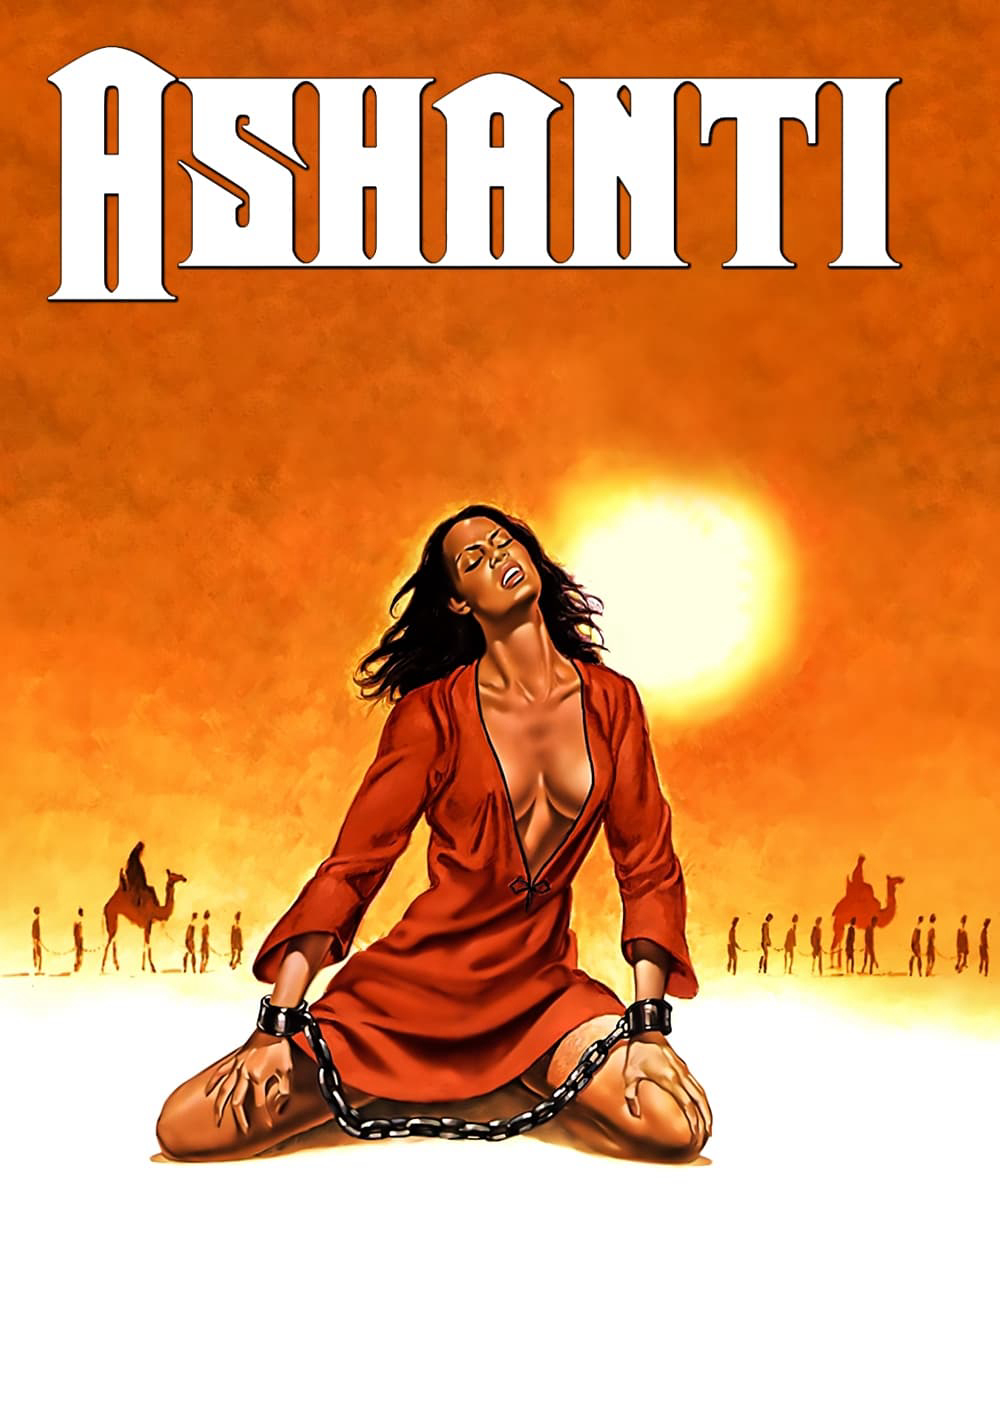 Poster Phim Vụ Bắt Cóc Bất Ngờ (Ashanti)